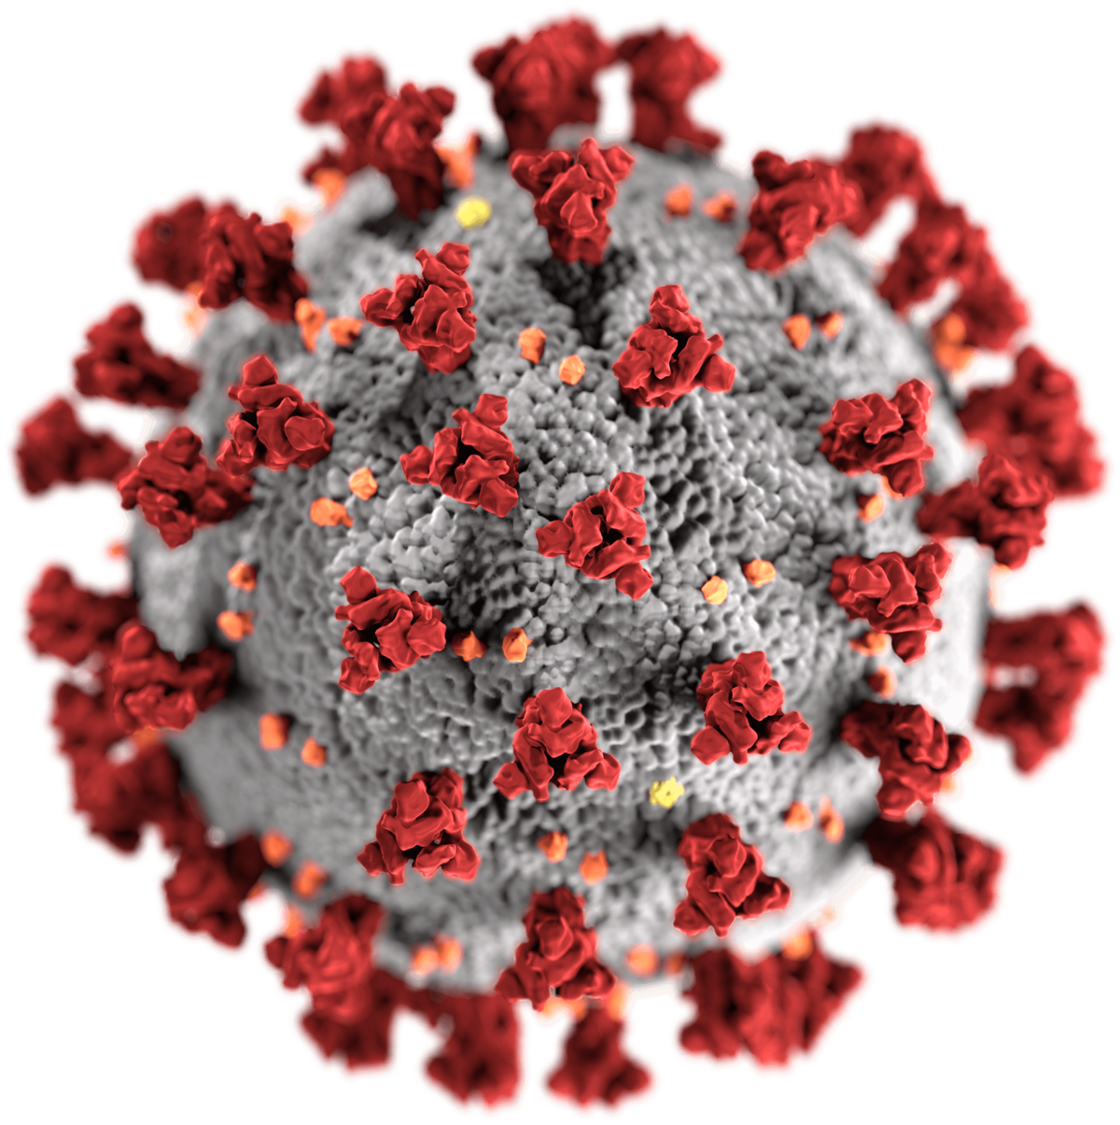 SARS-CoV-2 Virus Particle 